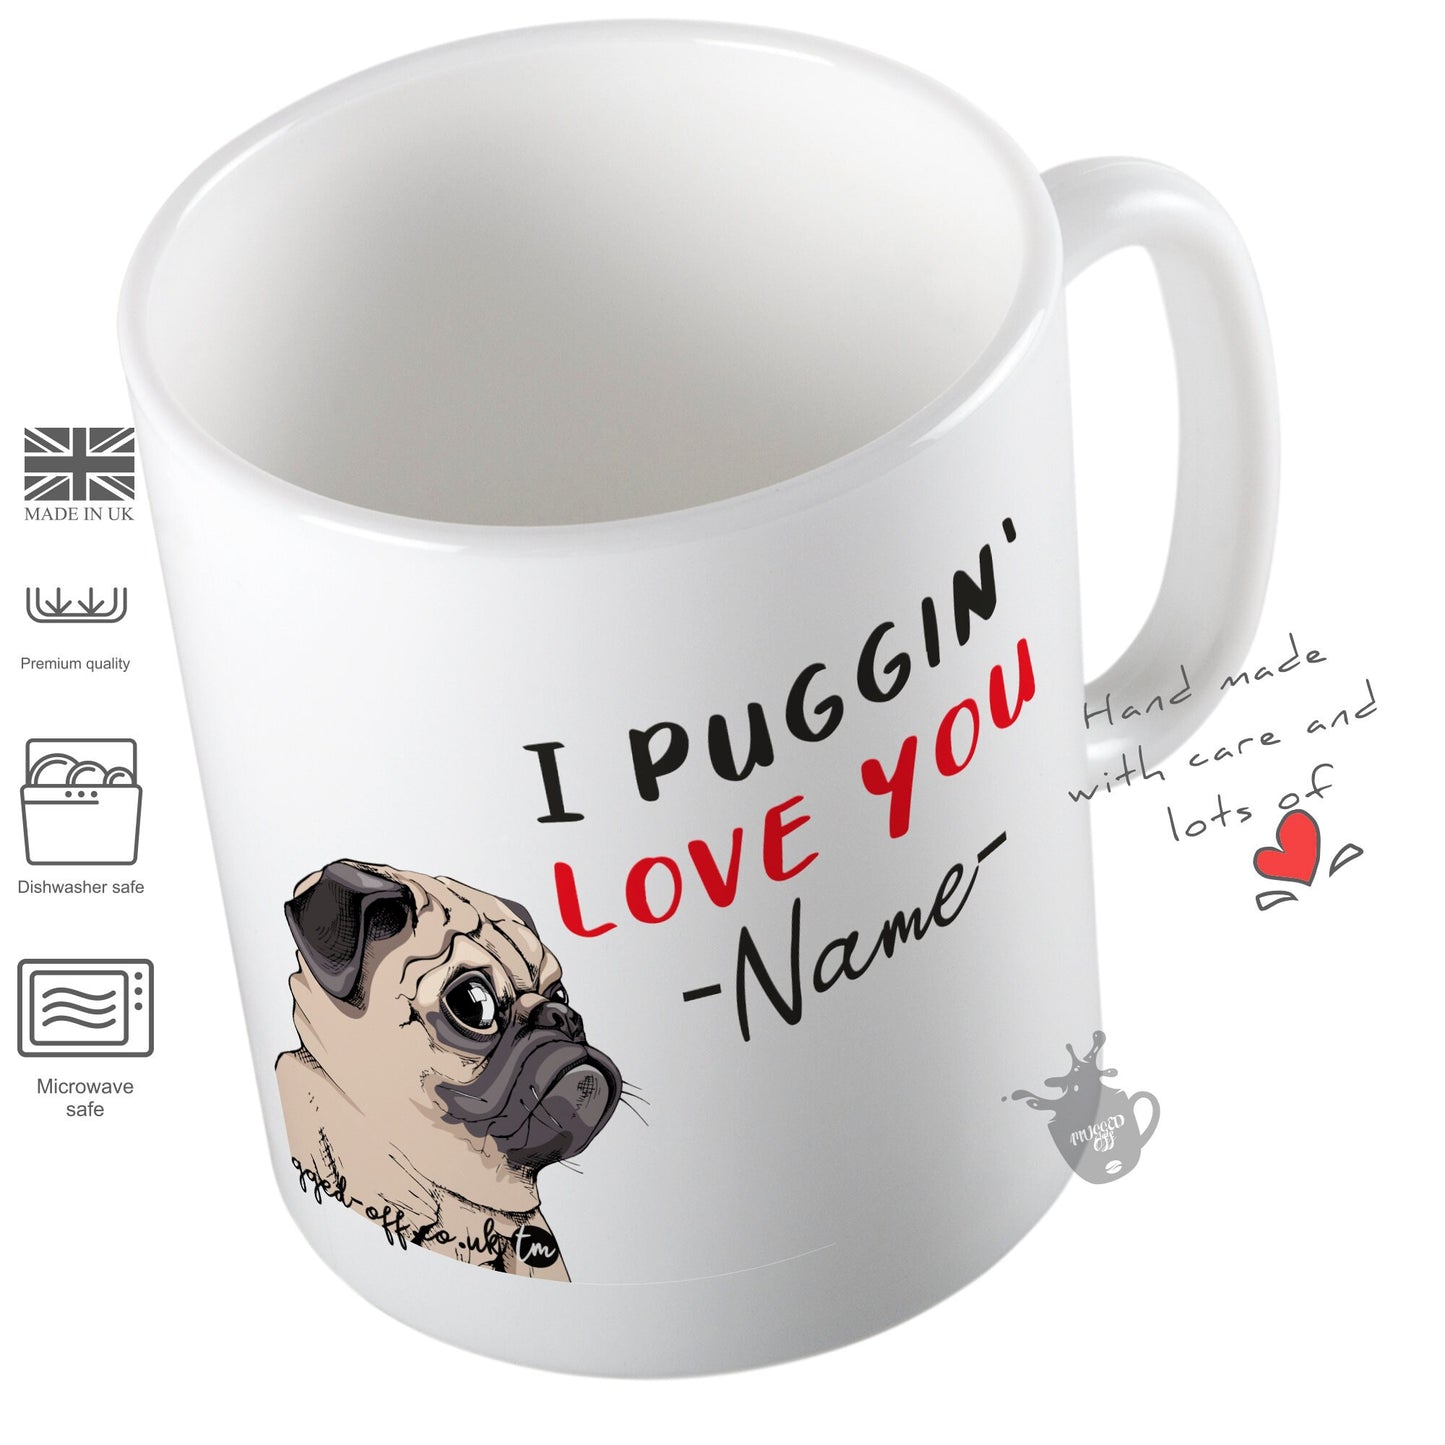 Pug Dog Mug - I Puggin'  Love You - Funny Birthday Or Anniversary Gift Mug Cups Tea Coffee Mugs Pug Mug